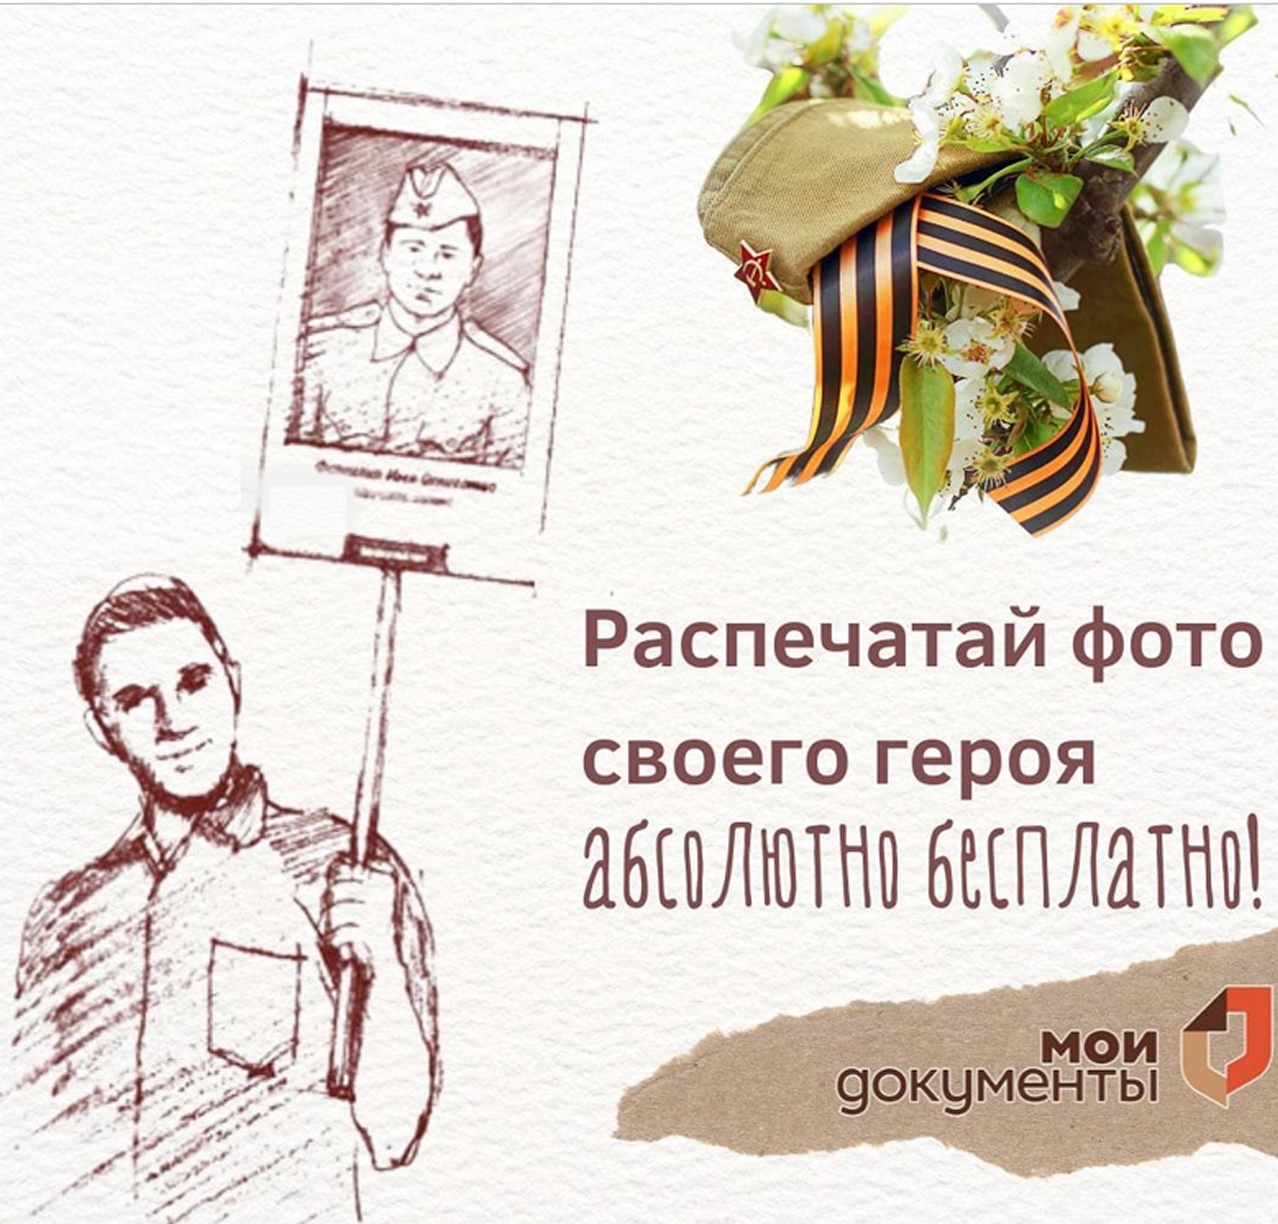 Жители Кузнецка могут распечатать фото героев в МФЦ